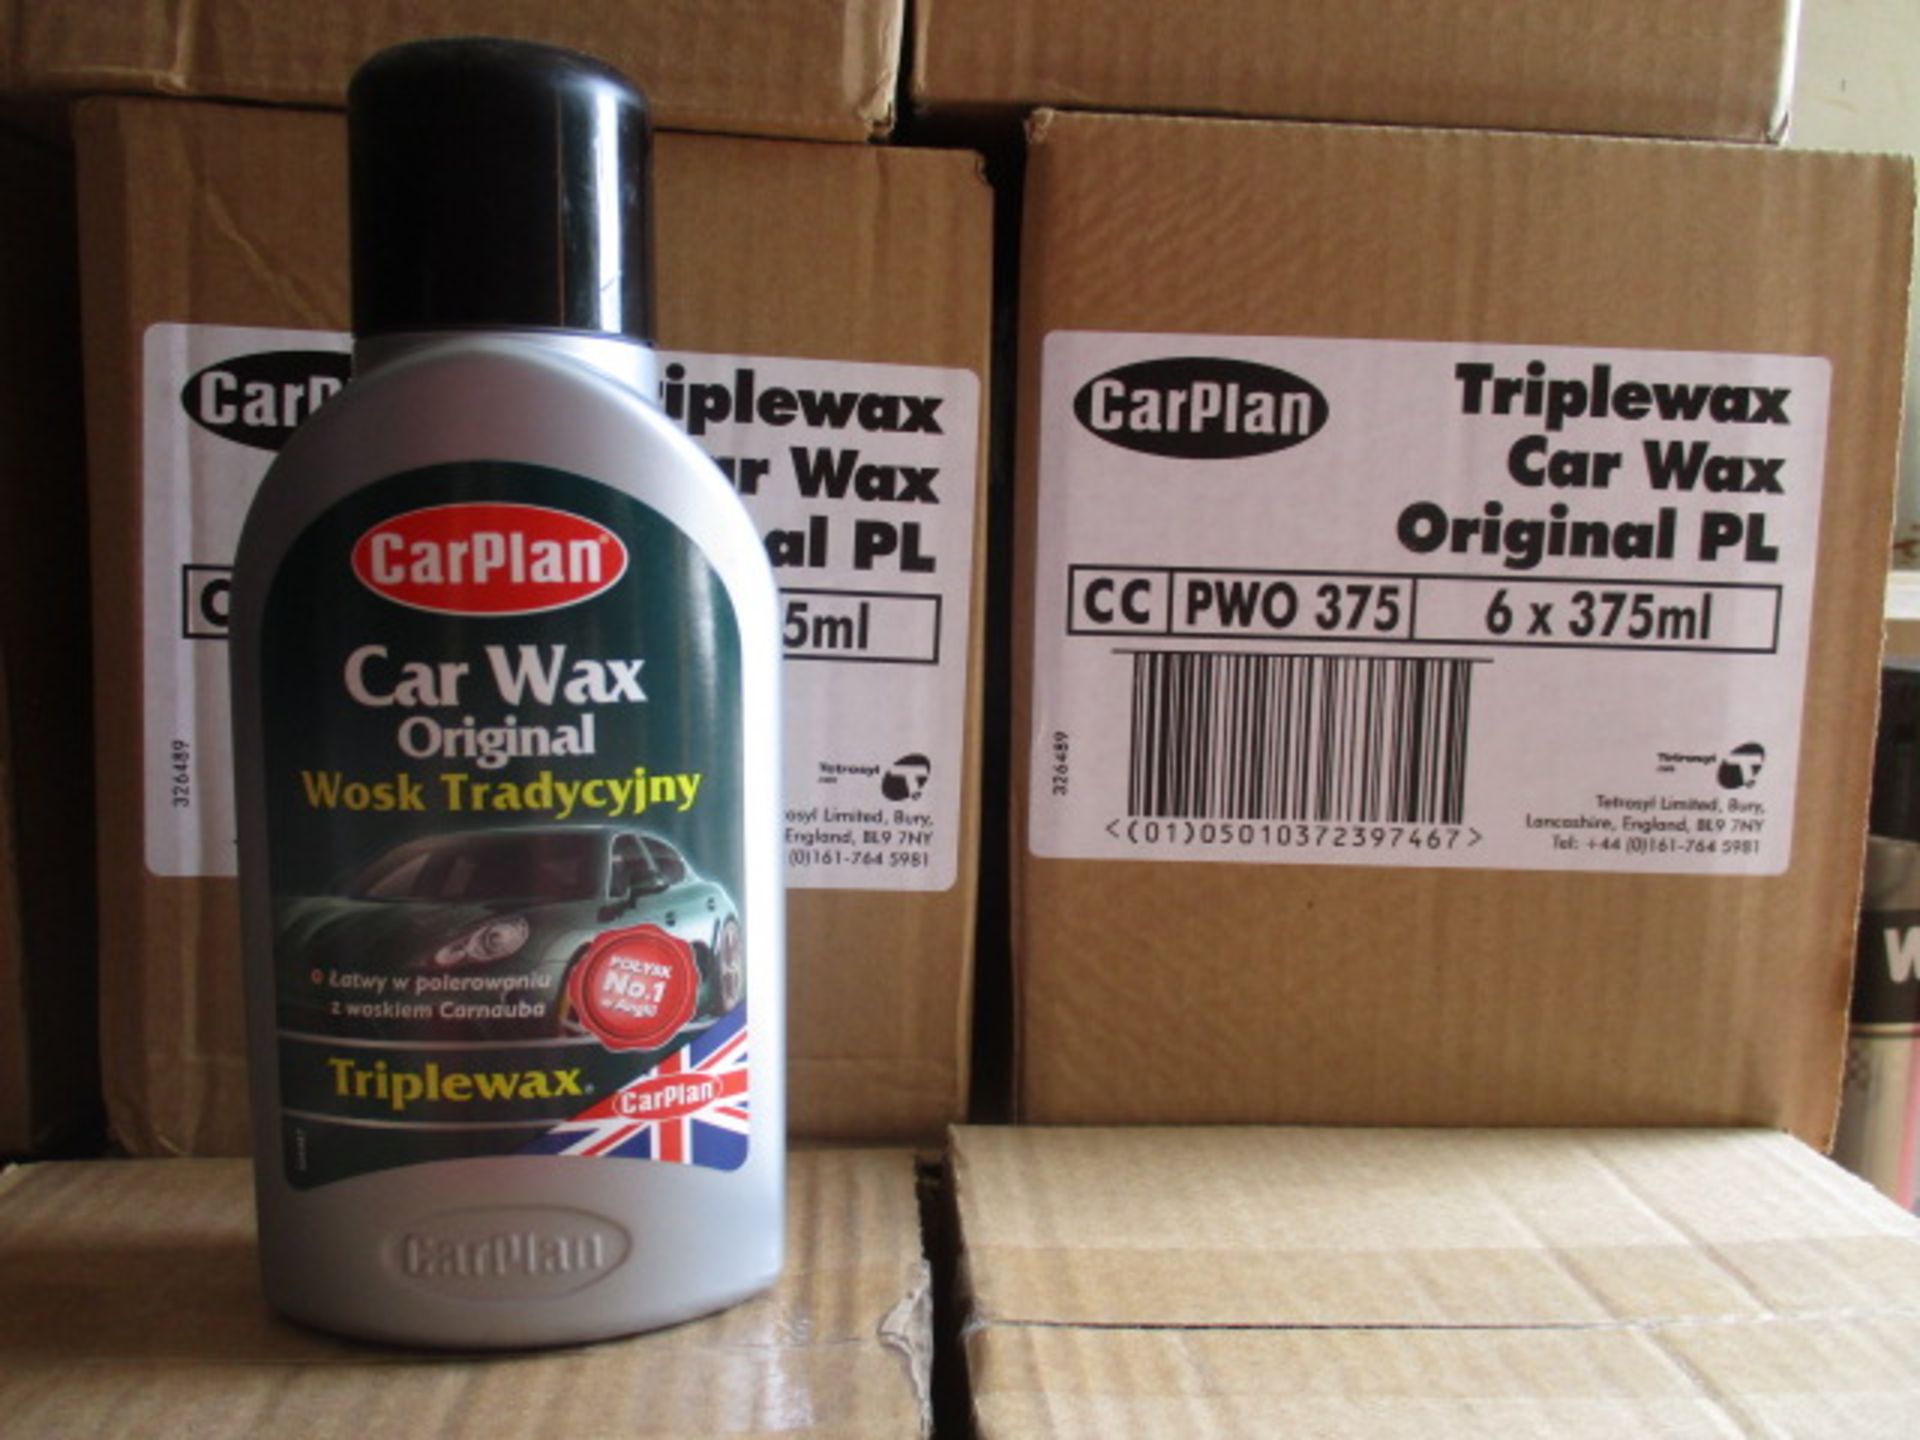 12pcs Carplan Carwax TripleWax polish 375ml - rrp £4.99 - 12pcs in lot